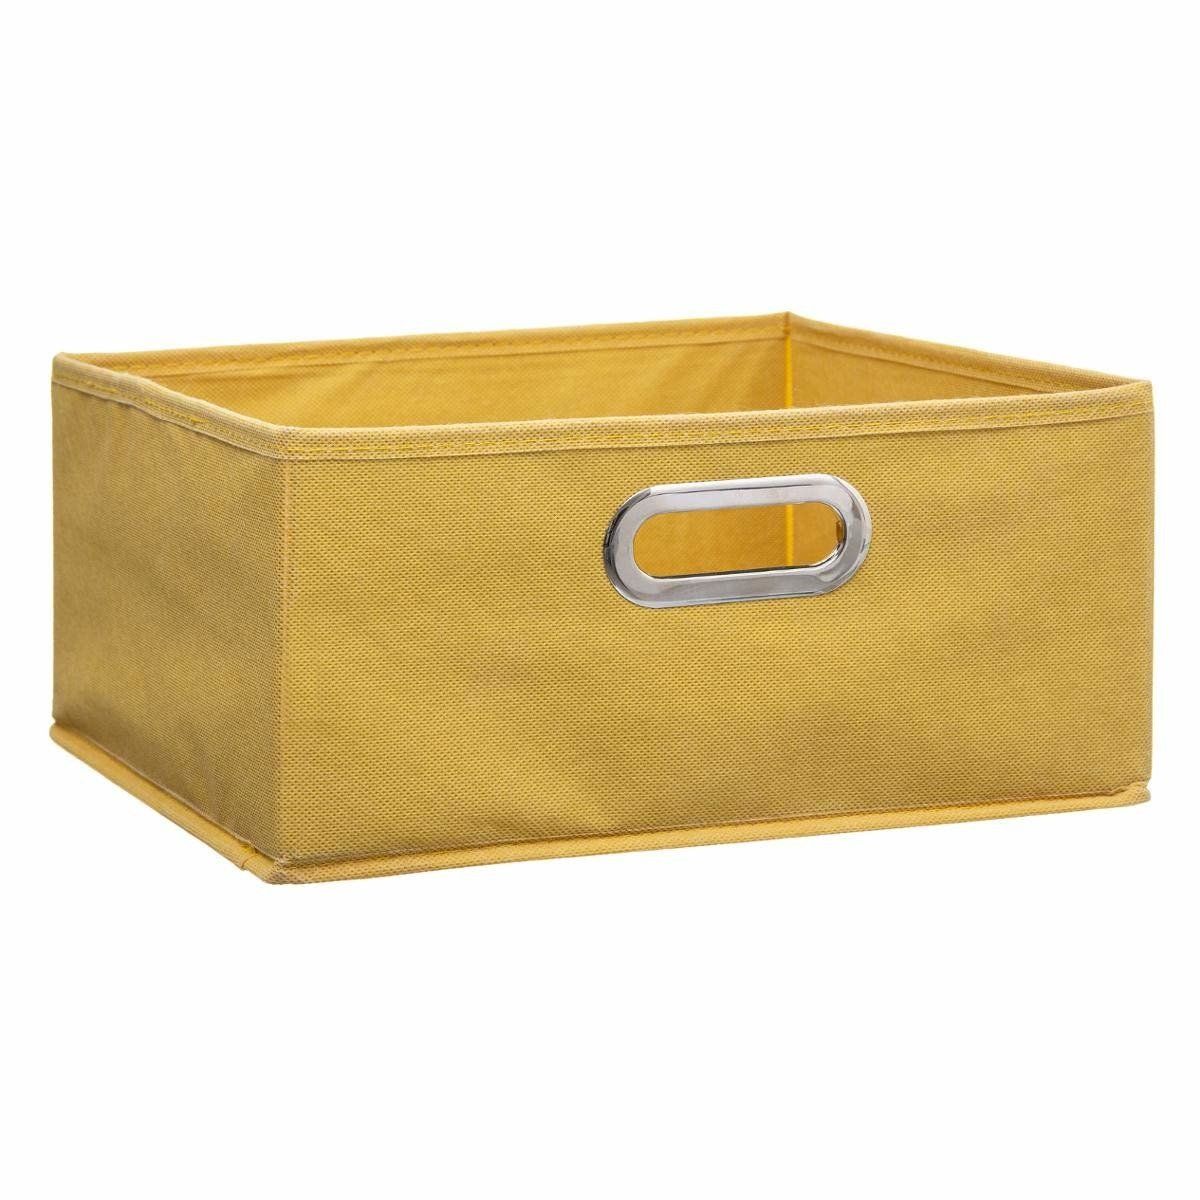 5five Simply Smart Krabice na textil ve žluté barvě z lepenky a textilu, 31x15 cm - EDAXO.CZ s.r.o.